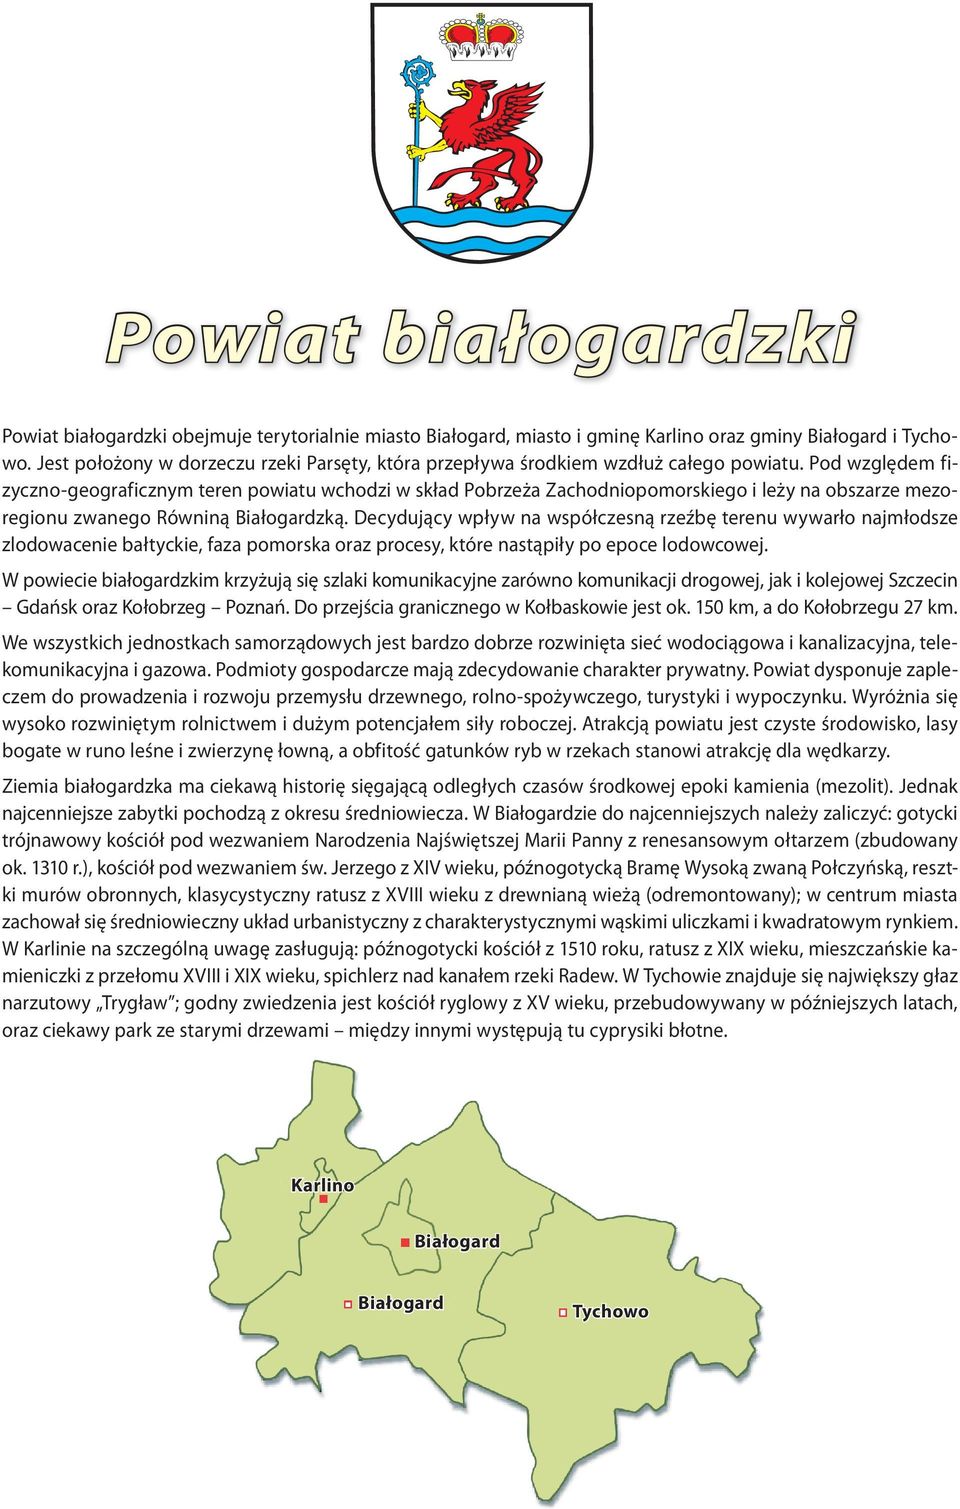 Pod względem fizyczno-geograficznym teren powiatu wchodzi w skład Pobrzeża Zachodniopomorskiego i leży na obszarze mezoregionu zwanego Równiną Białogardzką.